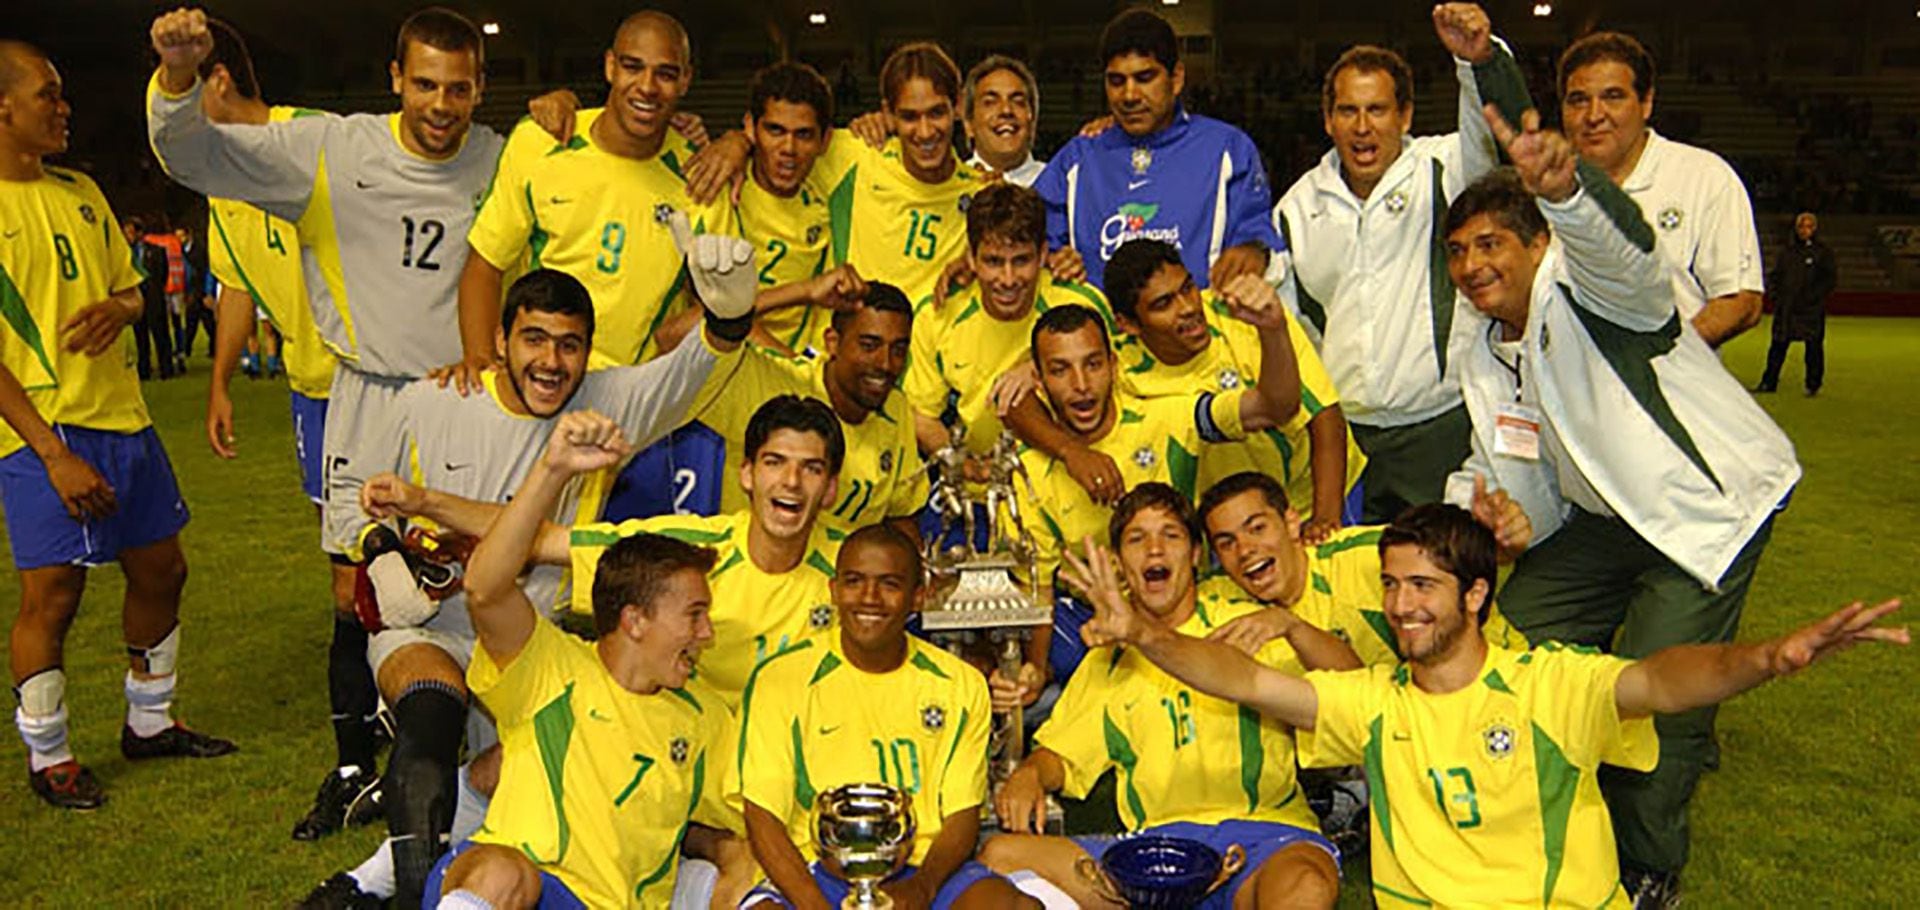 Parado, abrazado a Adriano y con el dorsal número 2, Daniel Alves celebra el campeonato de 2002.